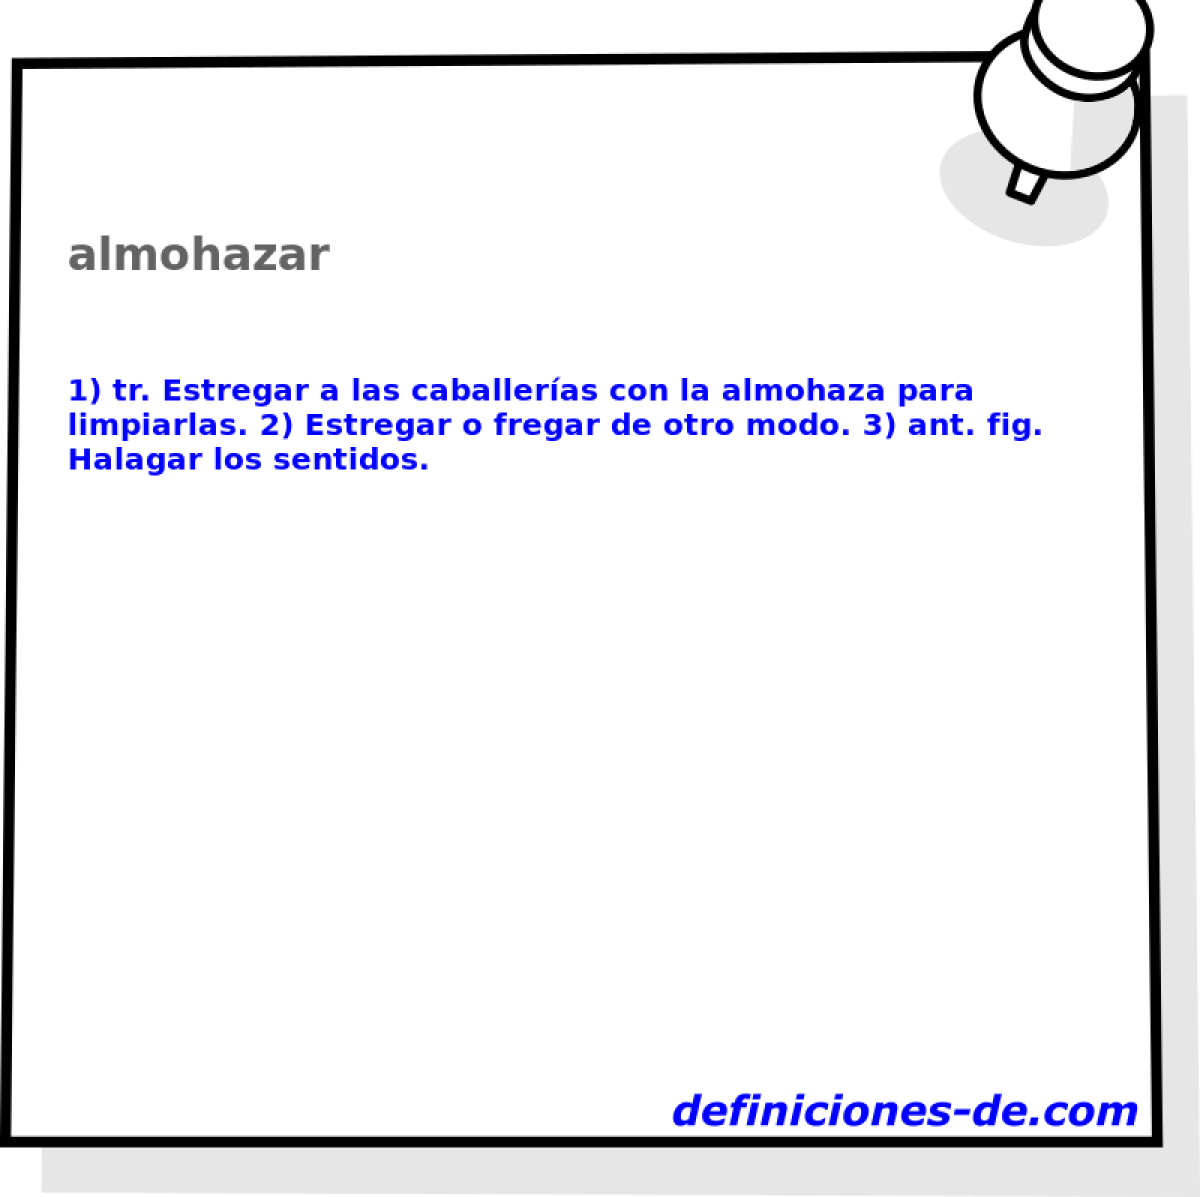 almohazar 